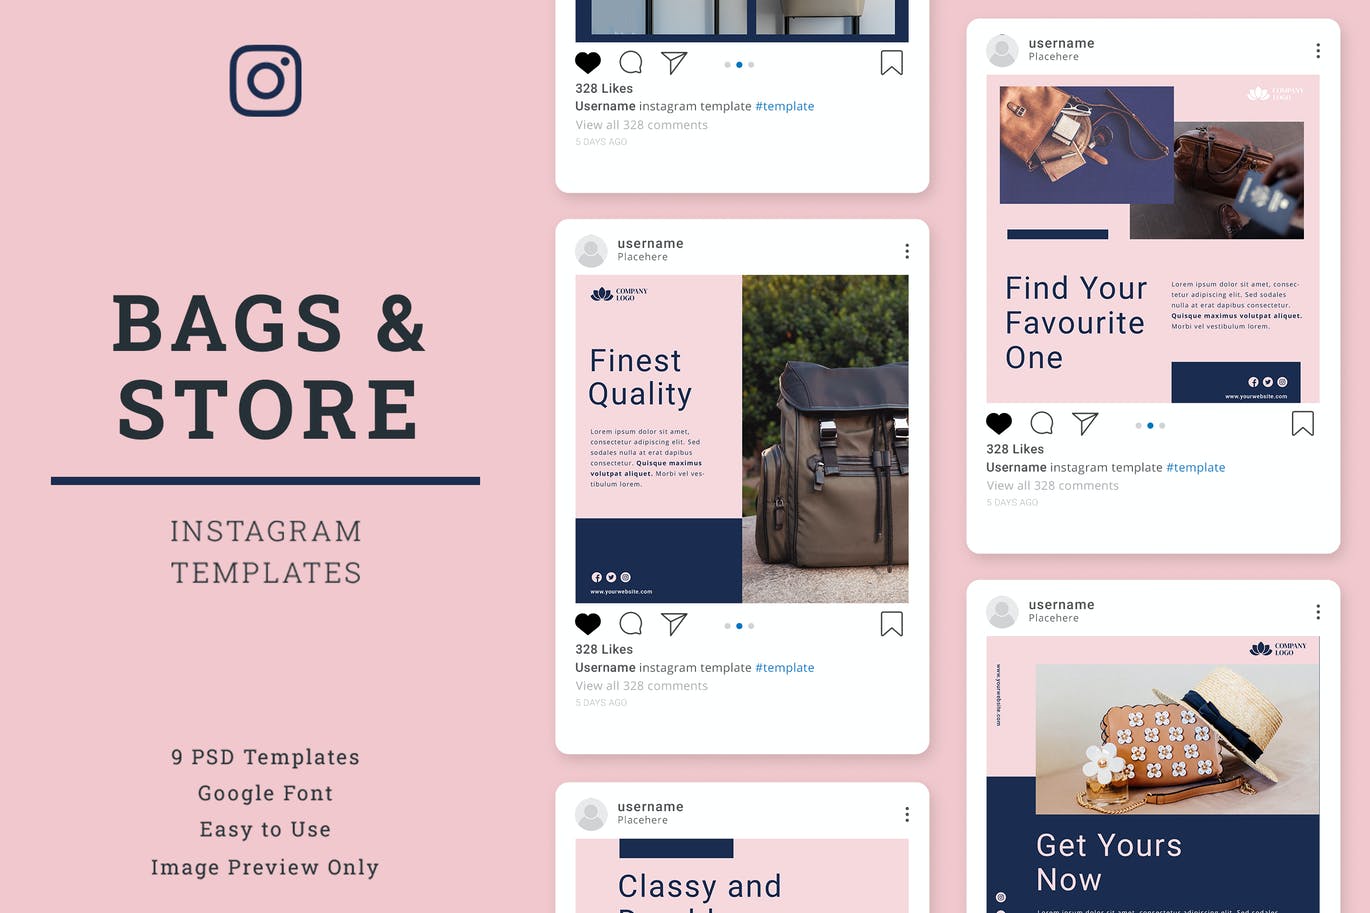 箱包商店品牌故事Instagram帖子设计社交媒体模板 Bag Store’s Instagram Post Template设计素材模板